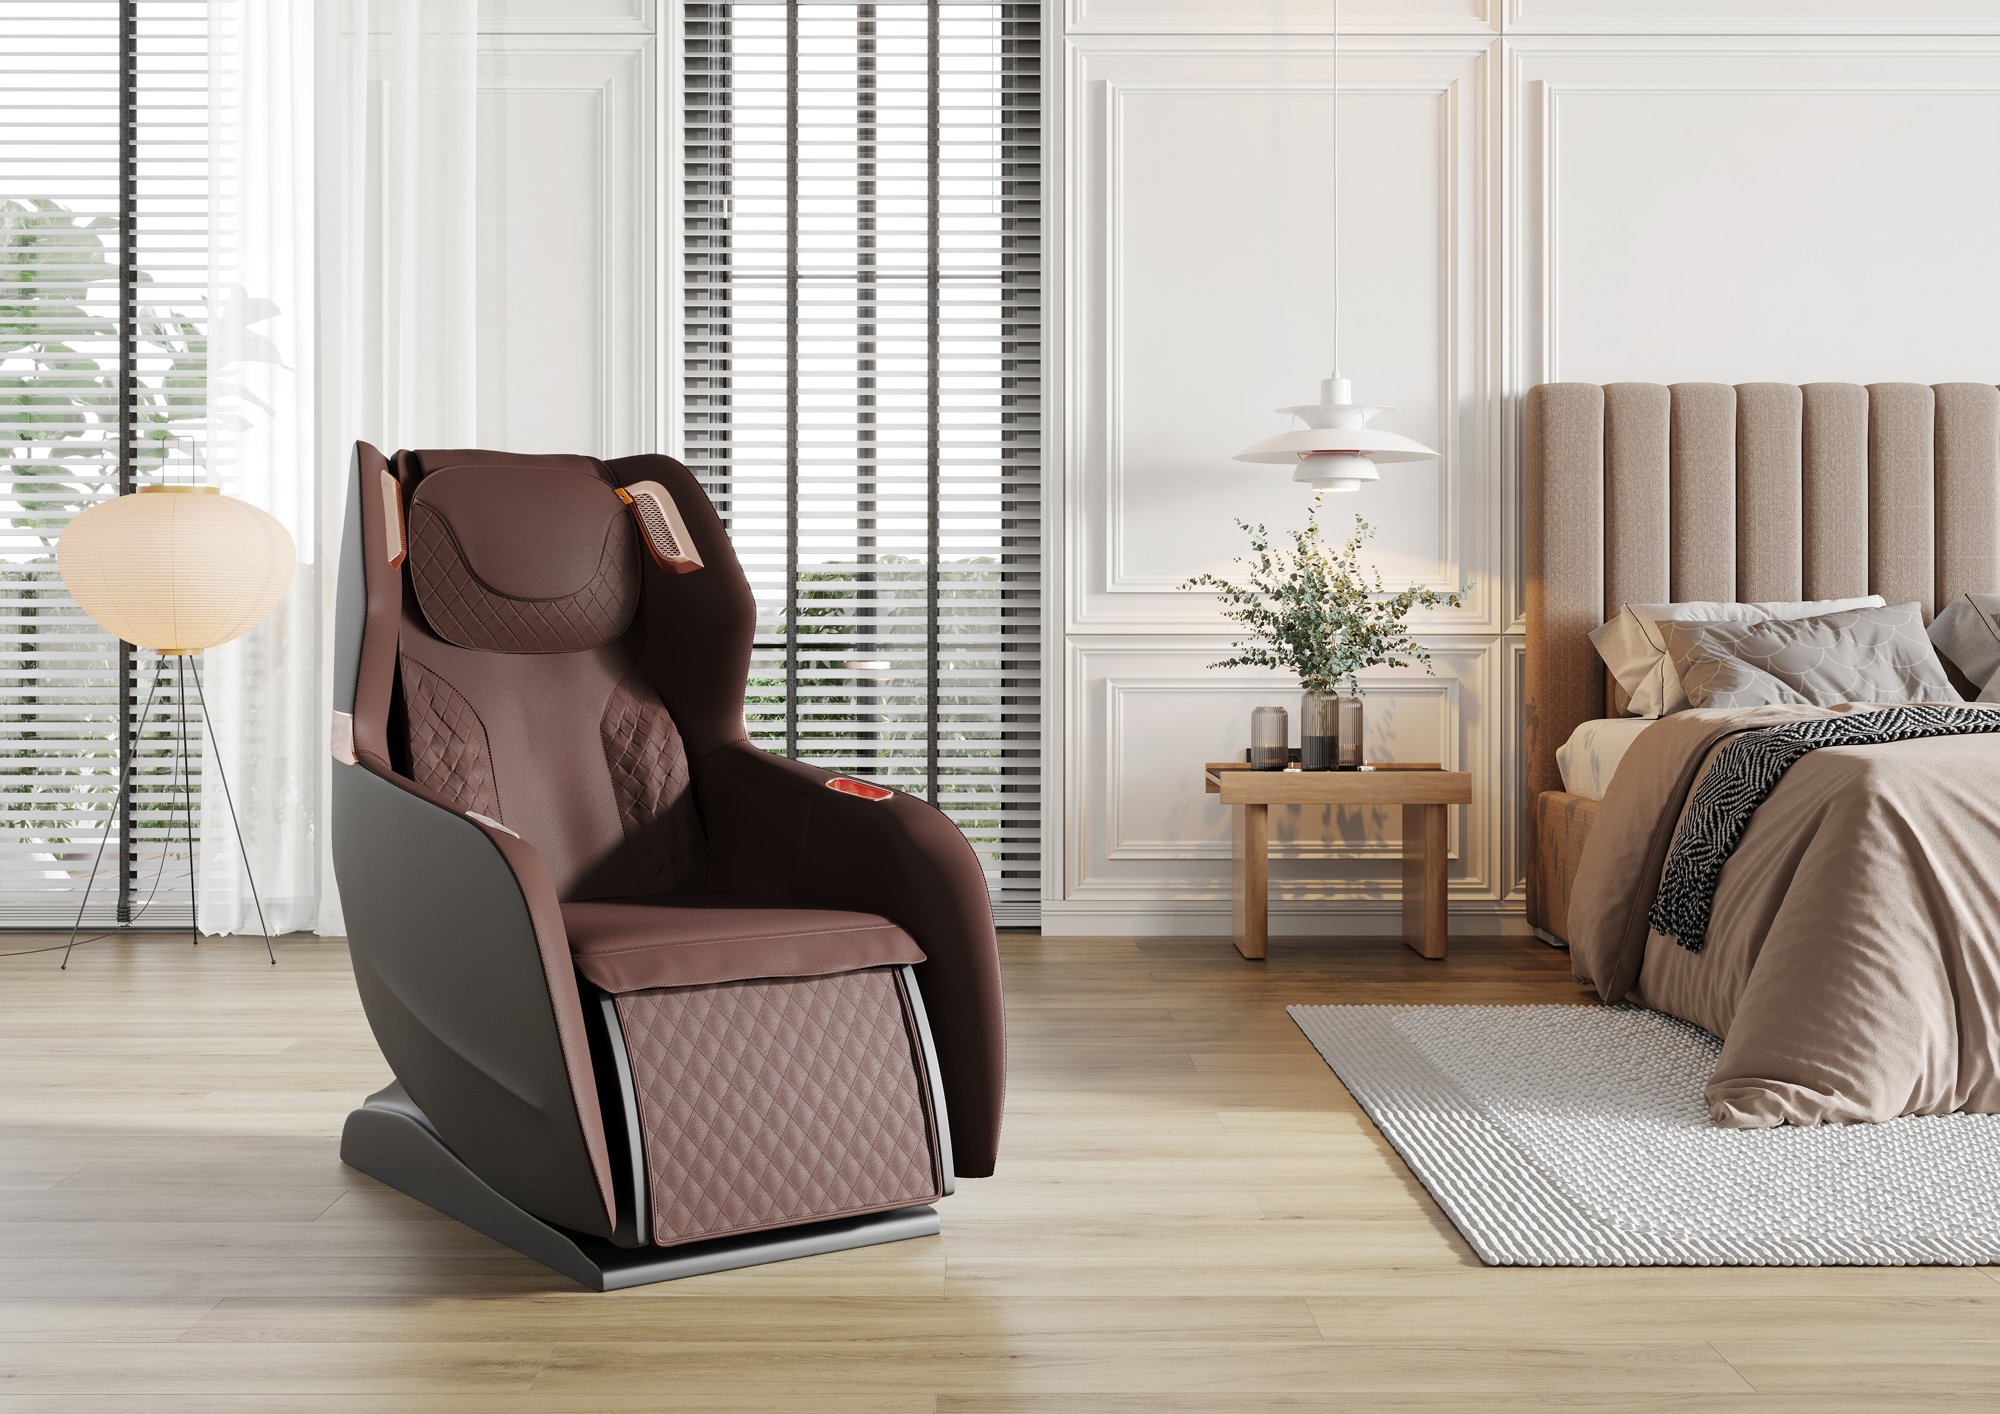 PW430 wirtualna sesja w aranżacji ujęcie frontowe  Model 3D fotela masującego Massage chair 3D model.jpg